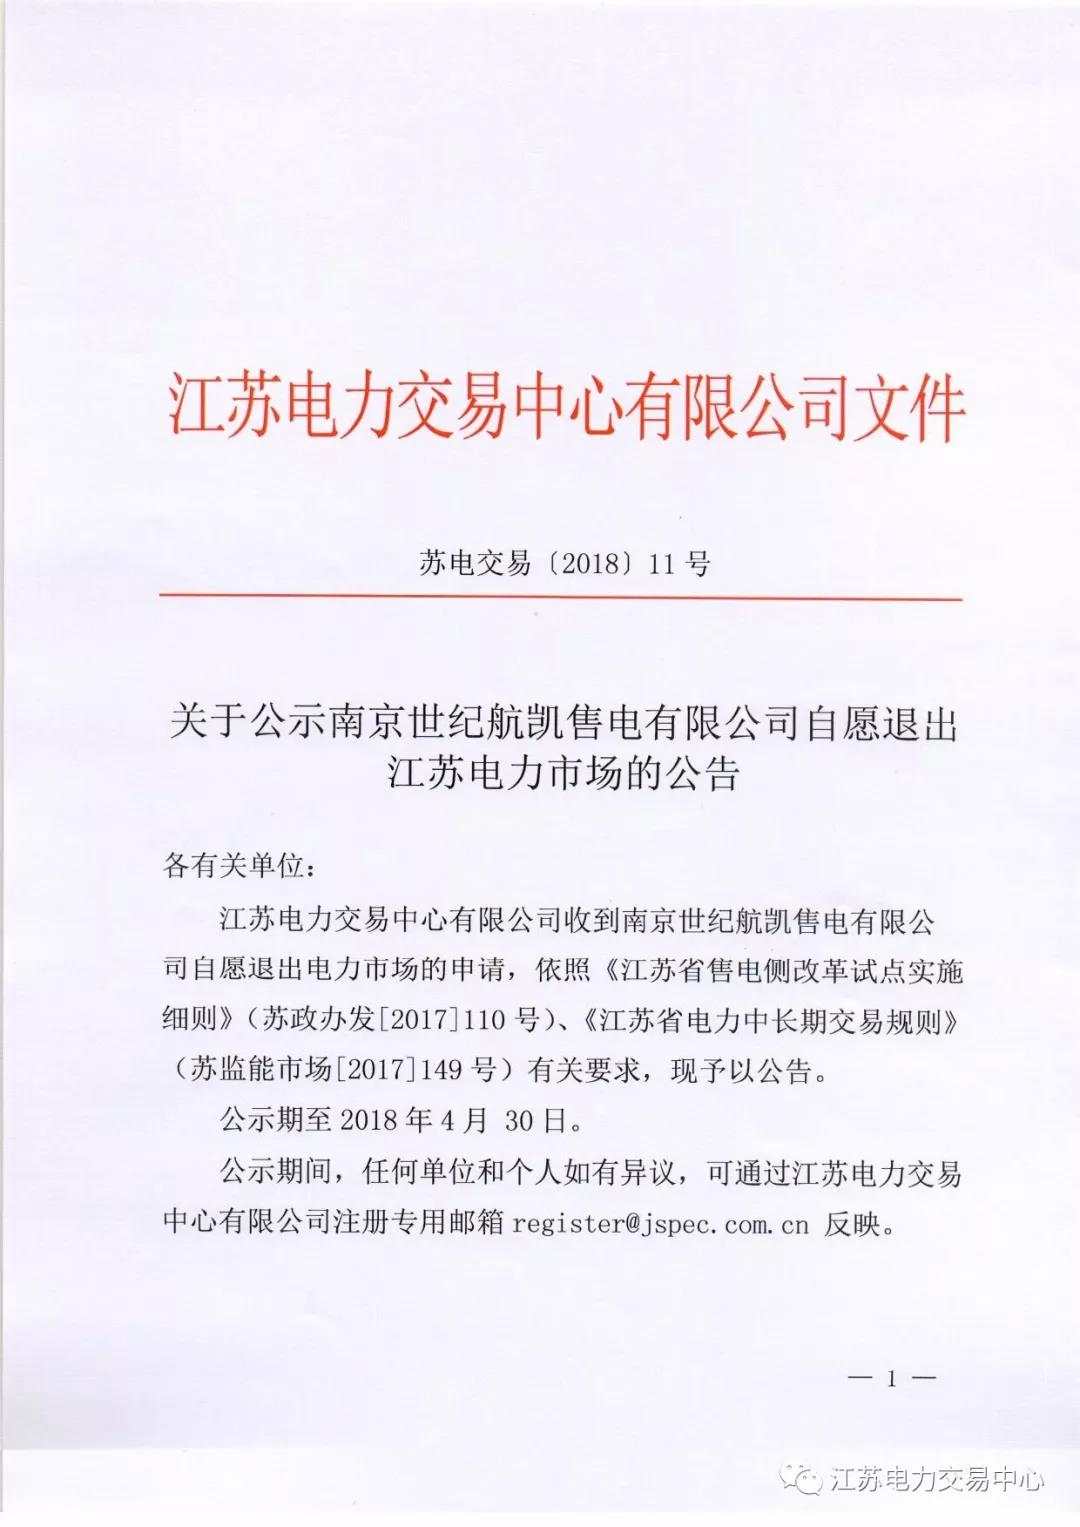 【江苏电力交易中心】《关于公示南京世纪航凯售电有限公司自愿退出江苏电力市场的公告》